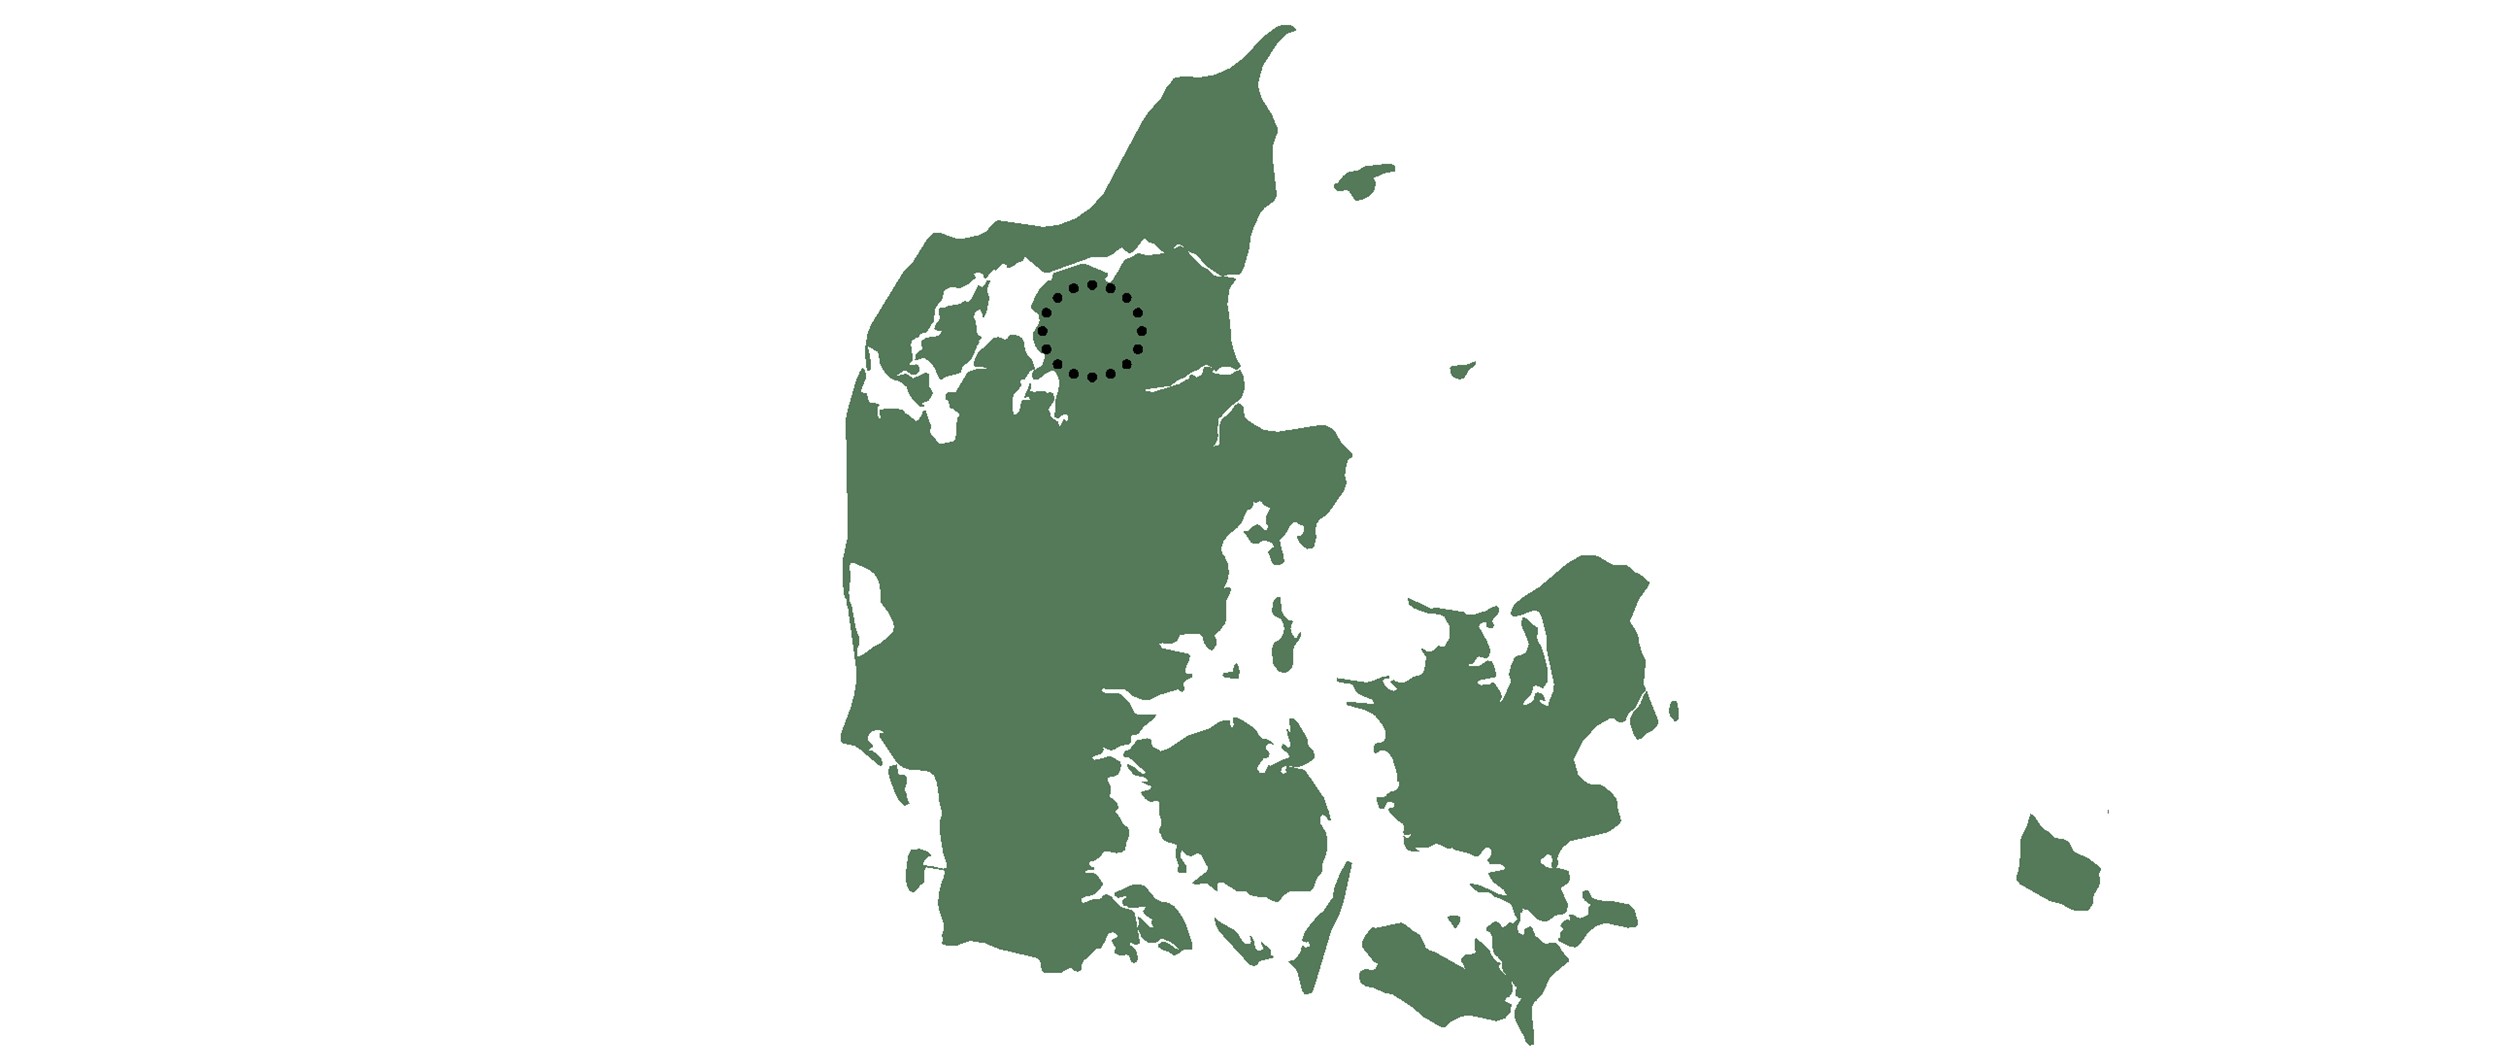 Projektet er beliggende i Aars, som er den største by i Vesthimmerlands kommune.